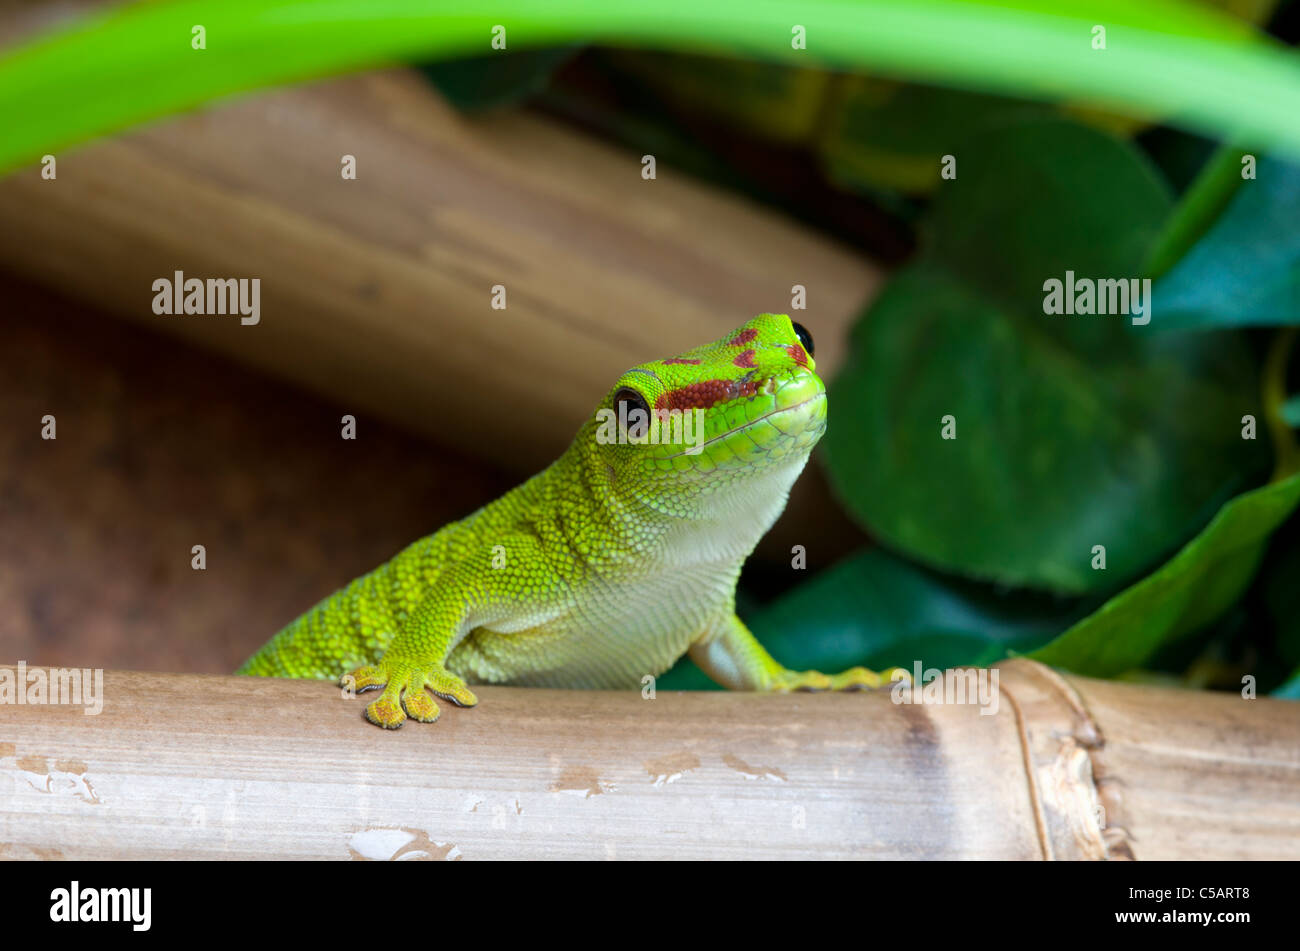 Madagascar, Giant day gecko Stock Photo